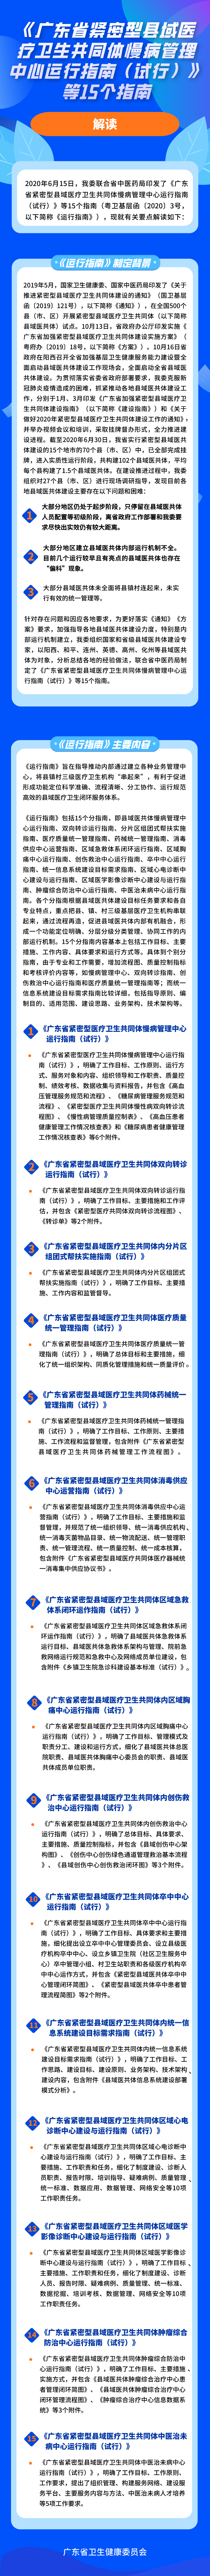 《广东省紧密型县域医疗卫生共同体 慢病管理中心运行指南（试行）》 等15个指南解读.png